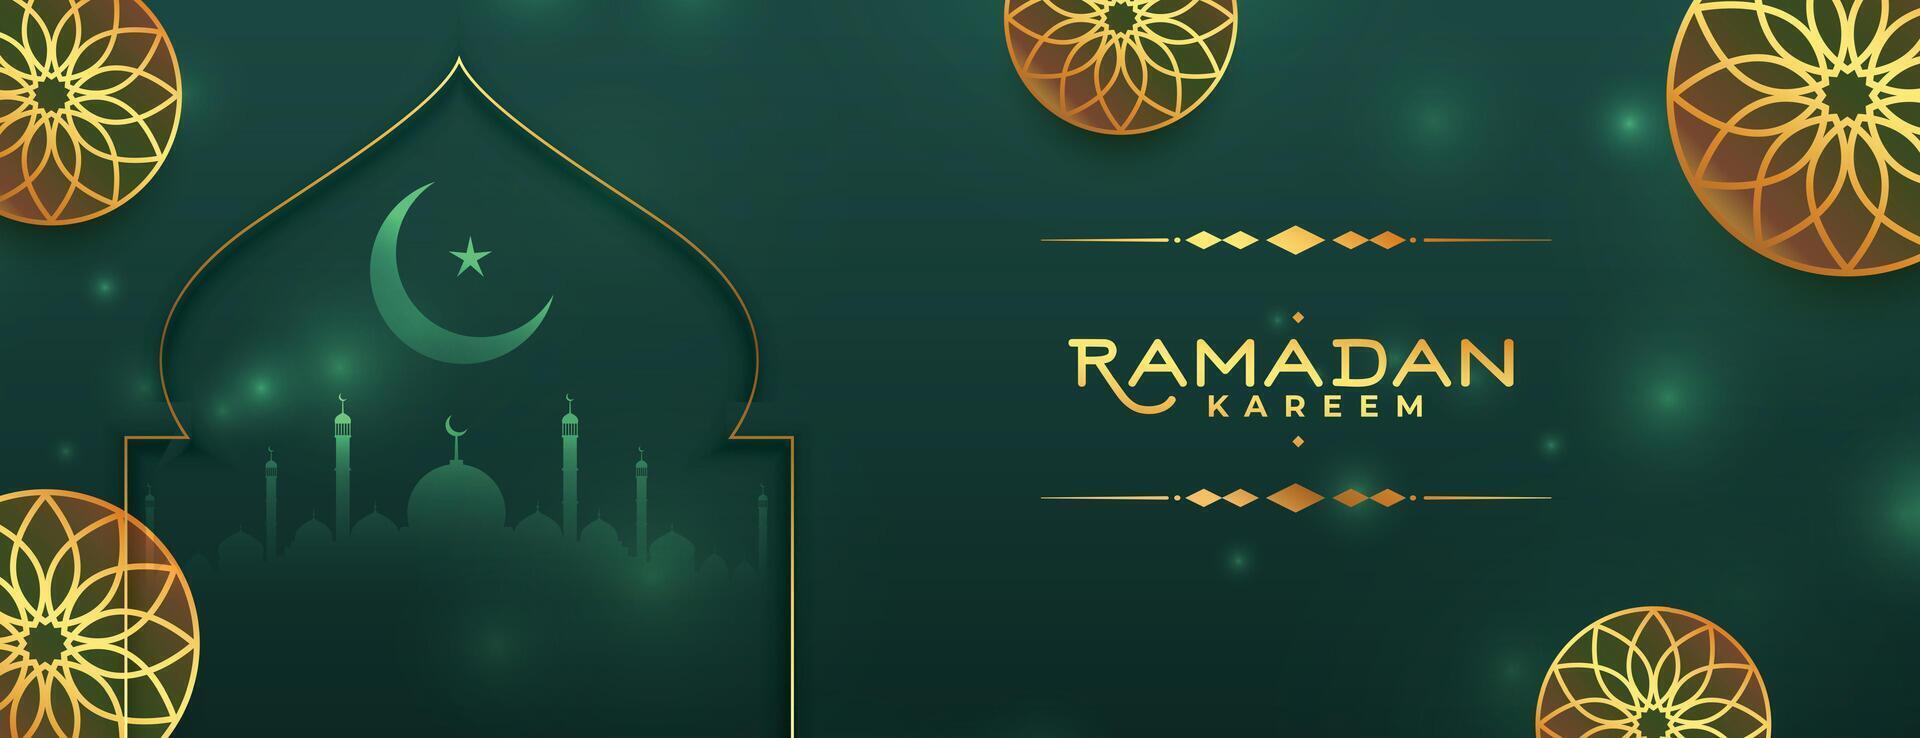 islamic ramadan kareem dekorativ baner välsignelse hälsning vektor